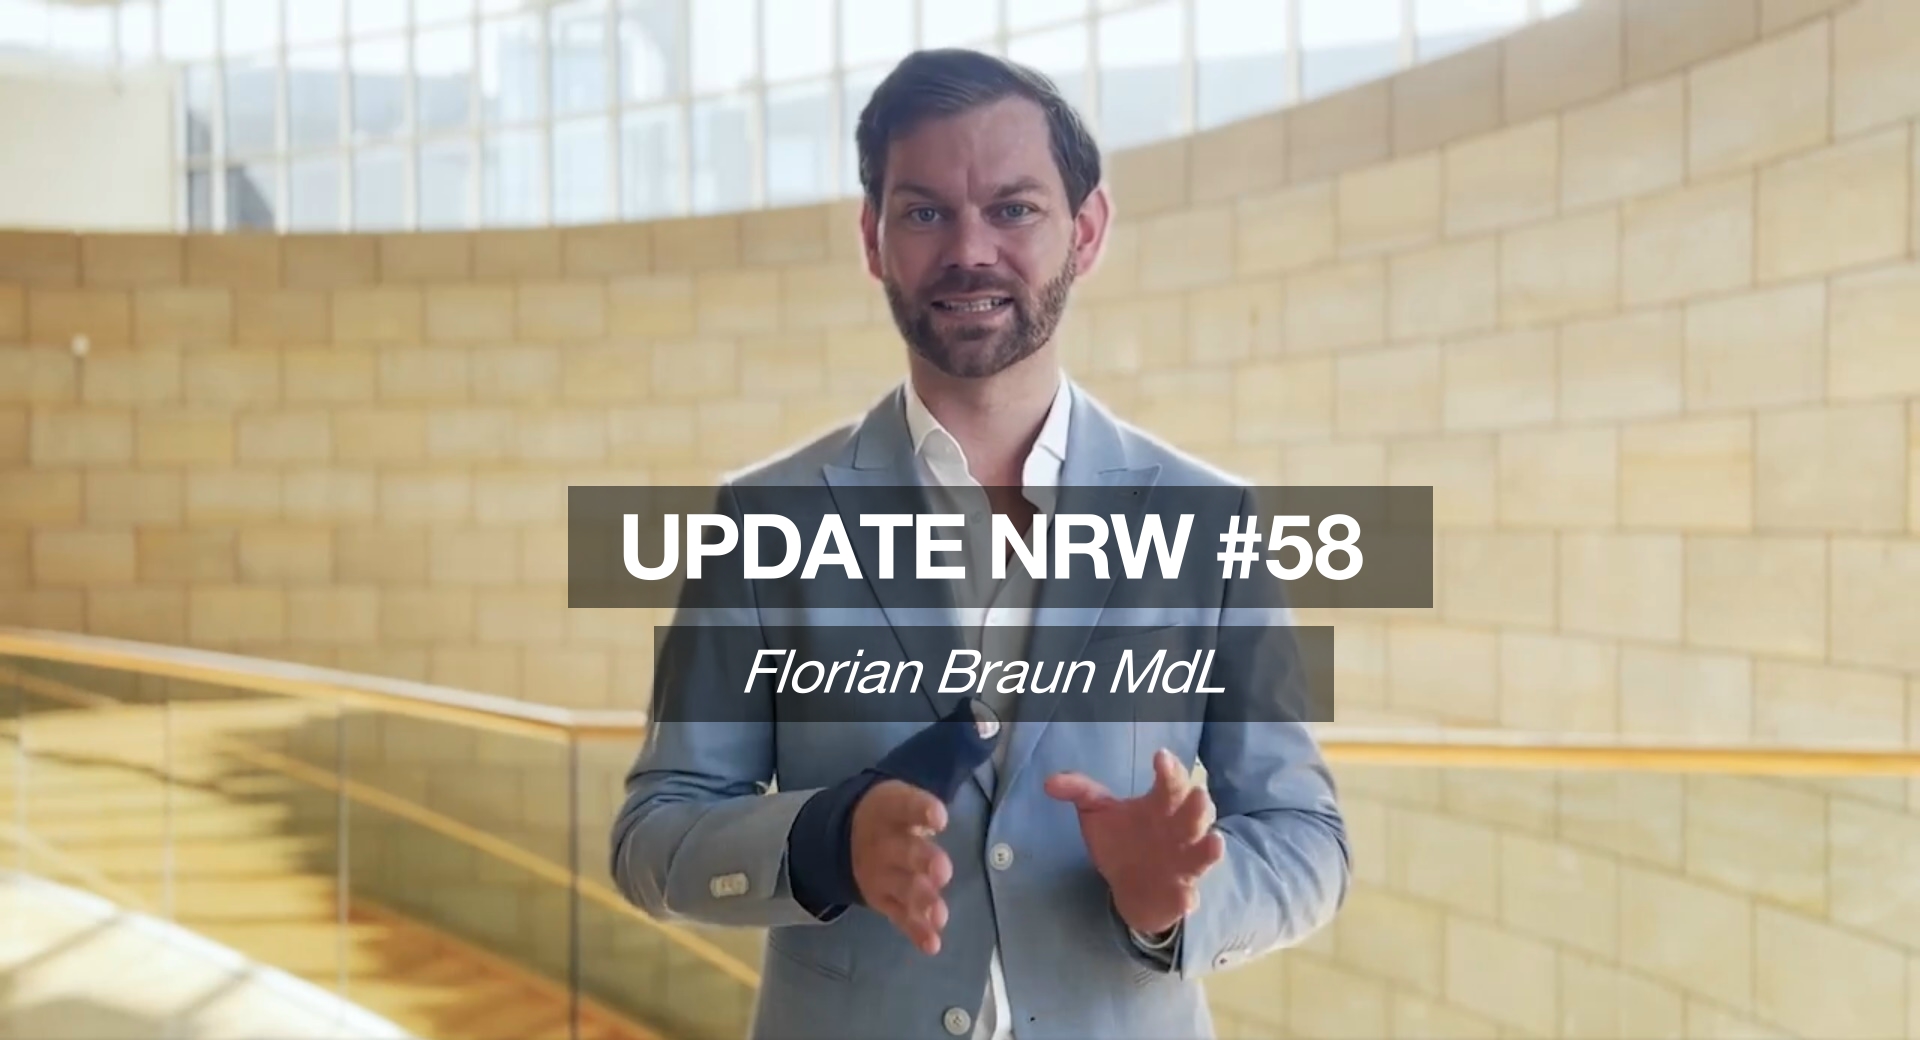 Florian Braun MdL: Update NRW #58